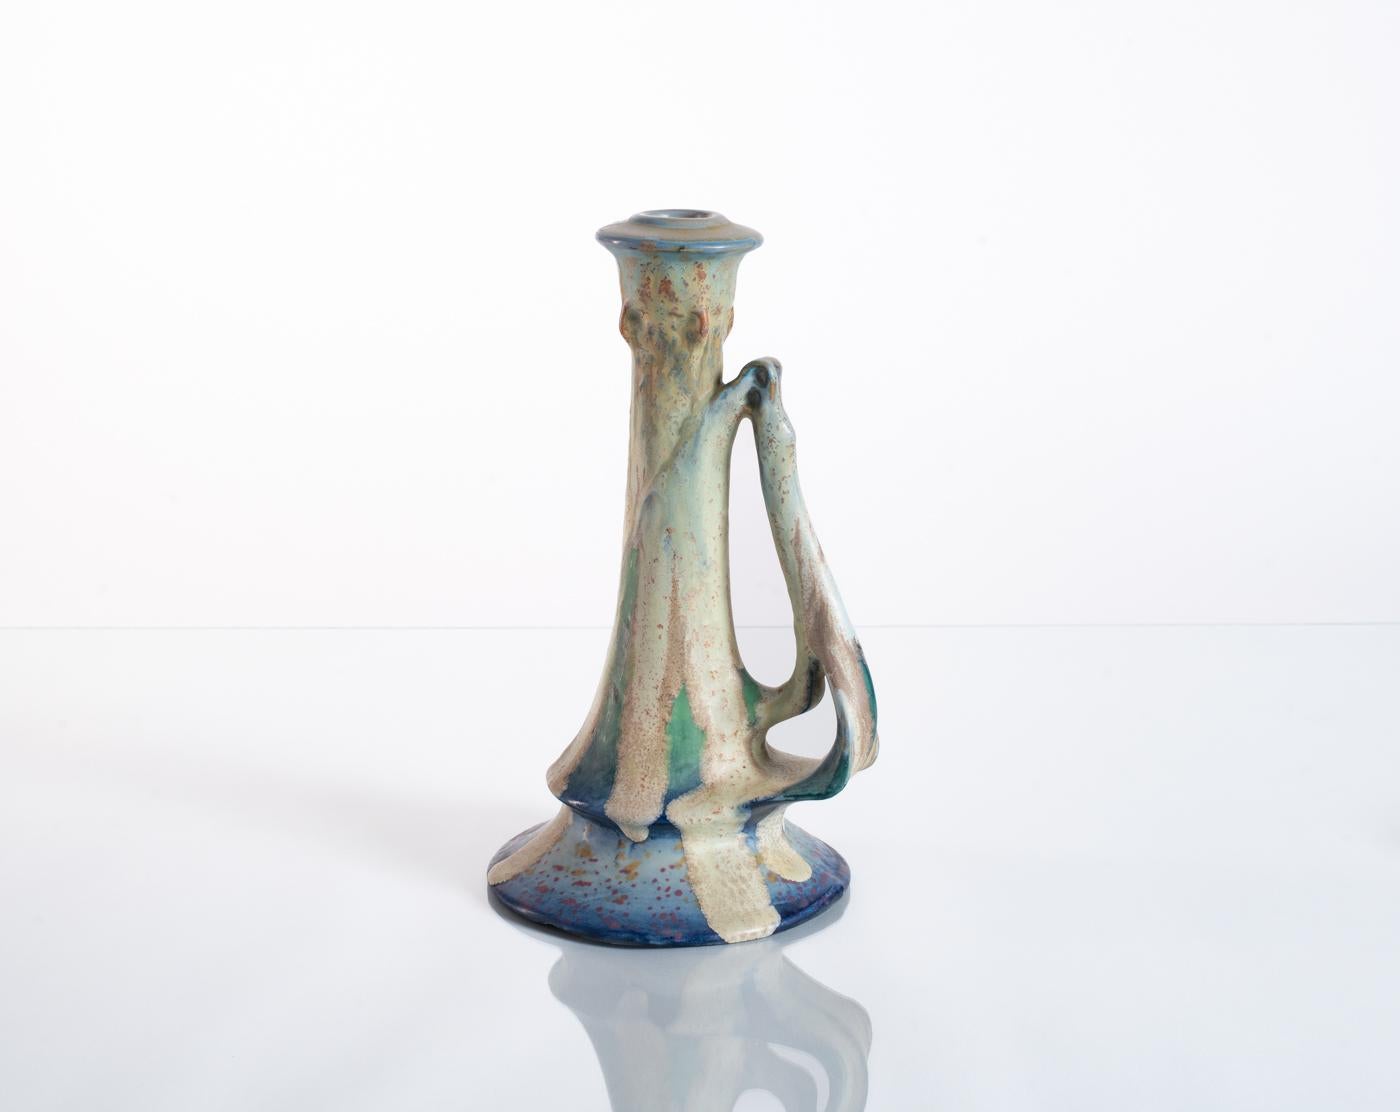 Biomorpher Kerzenhalter mit experimenteller Glasur, hergestellt von RStk Amphora um 1900, ein Paul Dachsel zugeschriebener Entwurf. Handsigniert im Sockel mit einer RStK-Markierung, die anzeigt, dass dieses Stück auf der Töpferscheibe handgefertigt